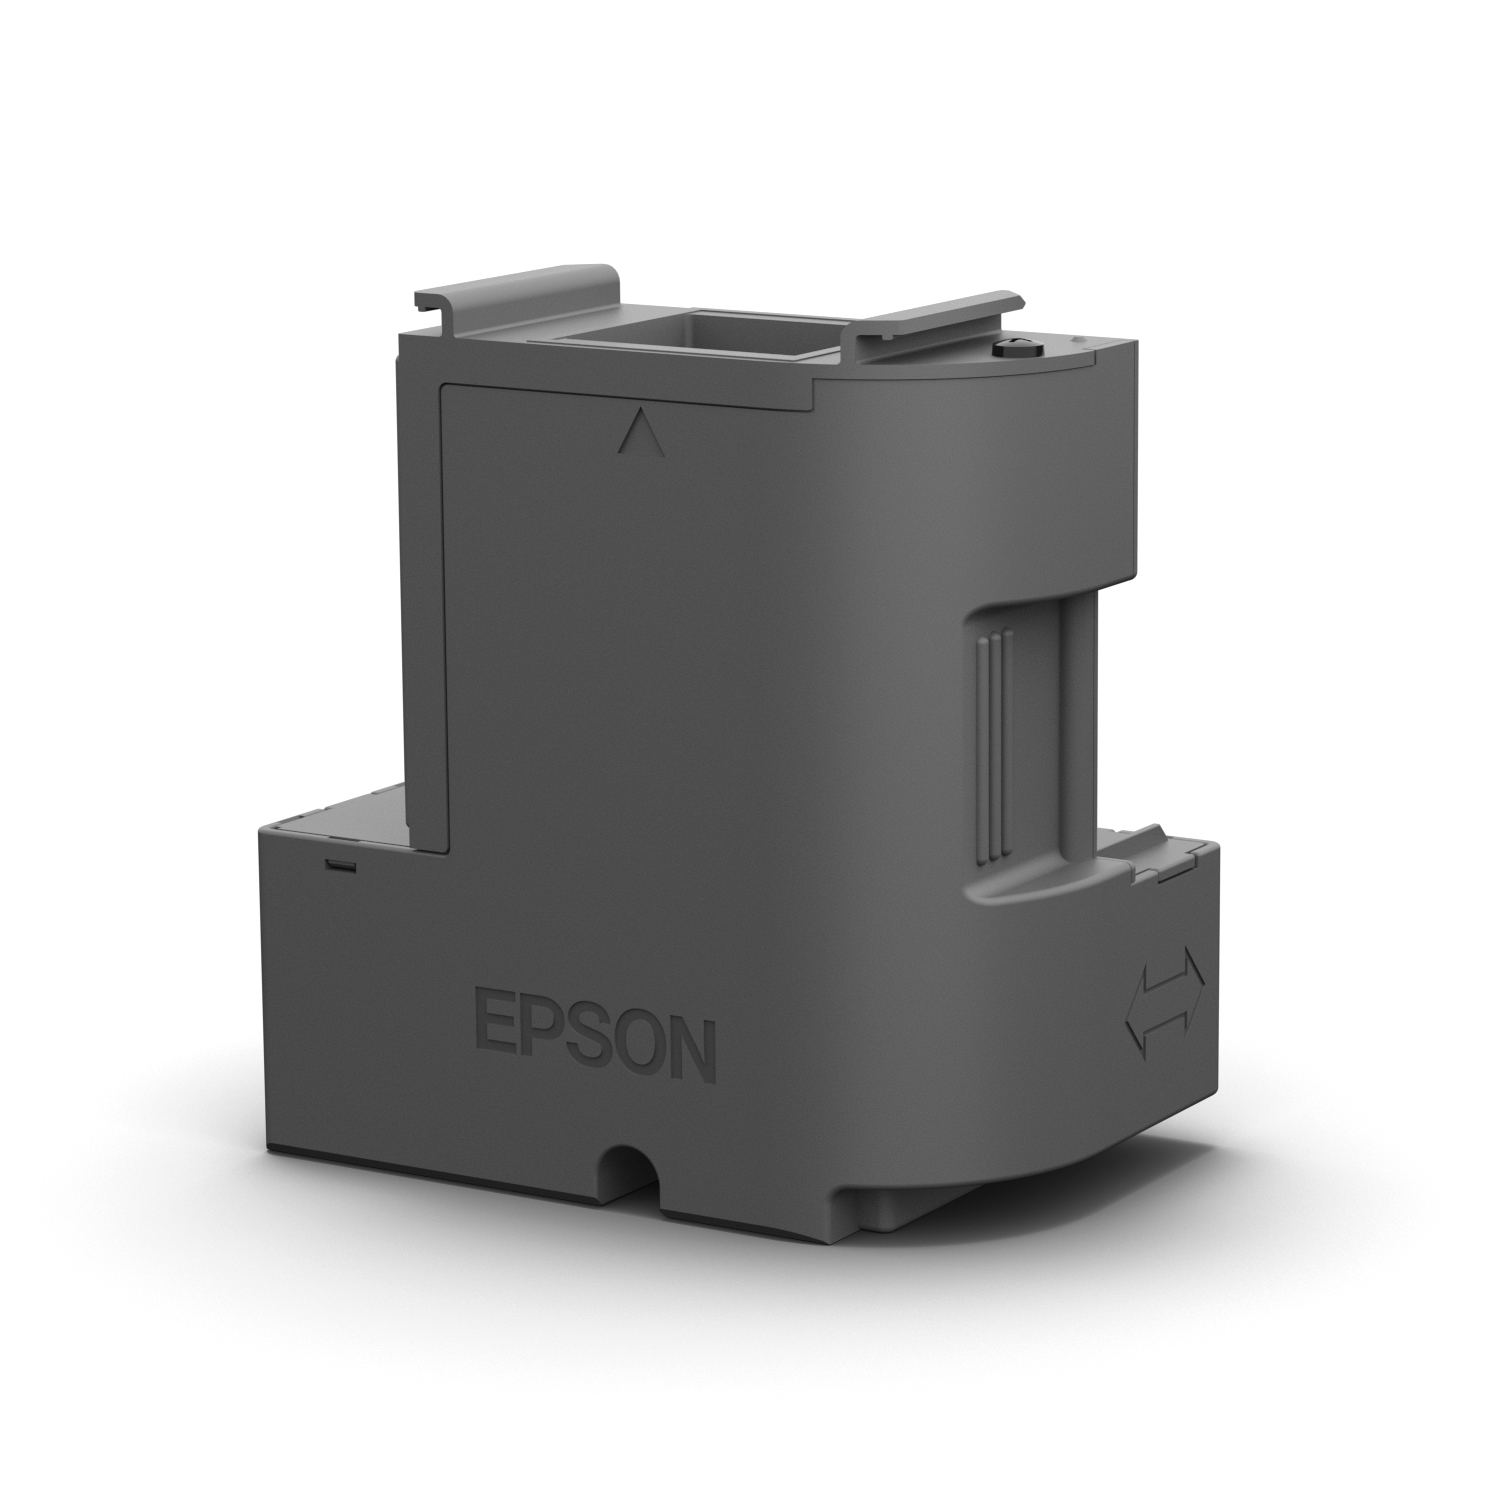 EPSON Maintenance Box for XP-5100 / WF-2860DWF / ET-2700 / ET-3700 / ET-4700 / L4000 / L6000 Series